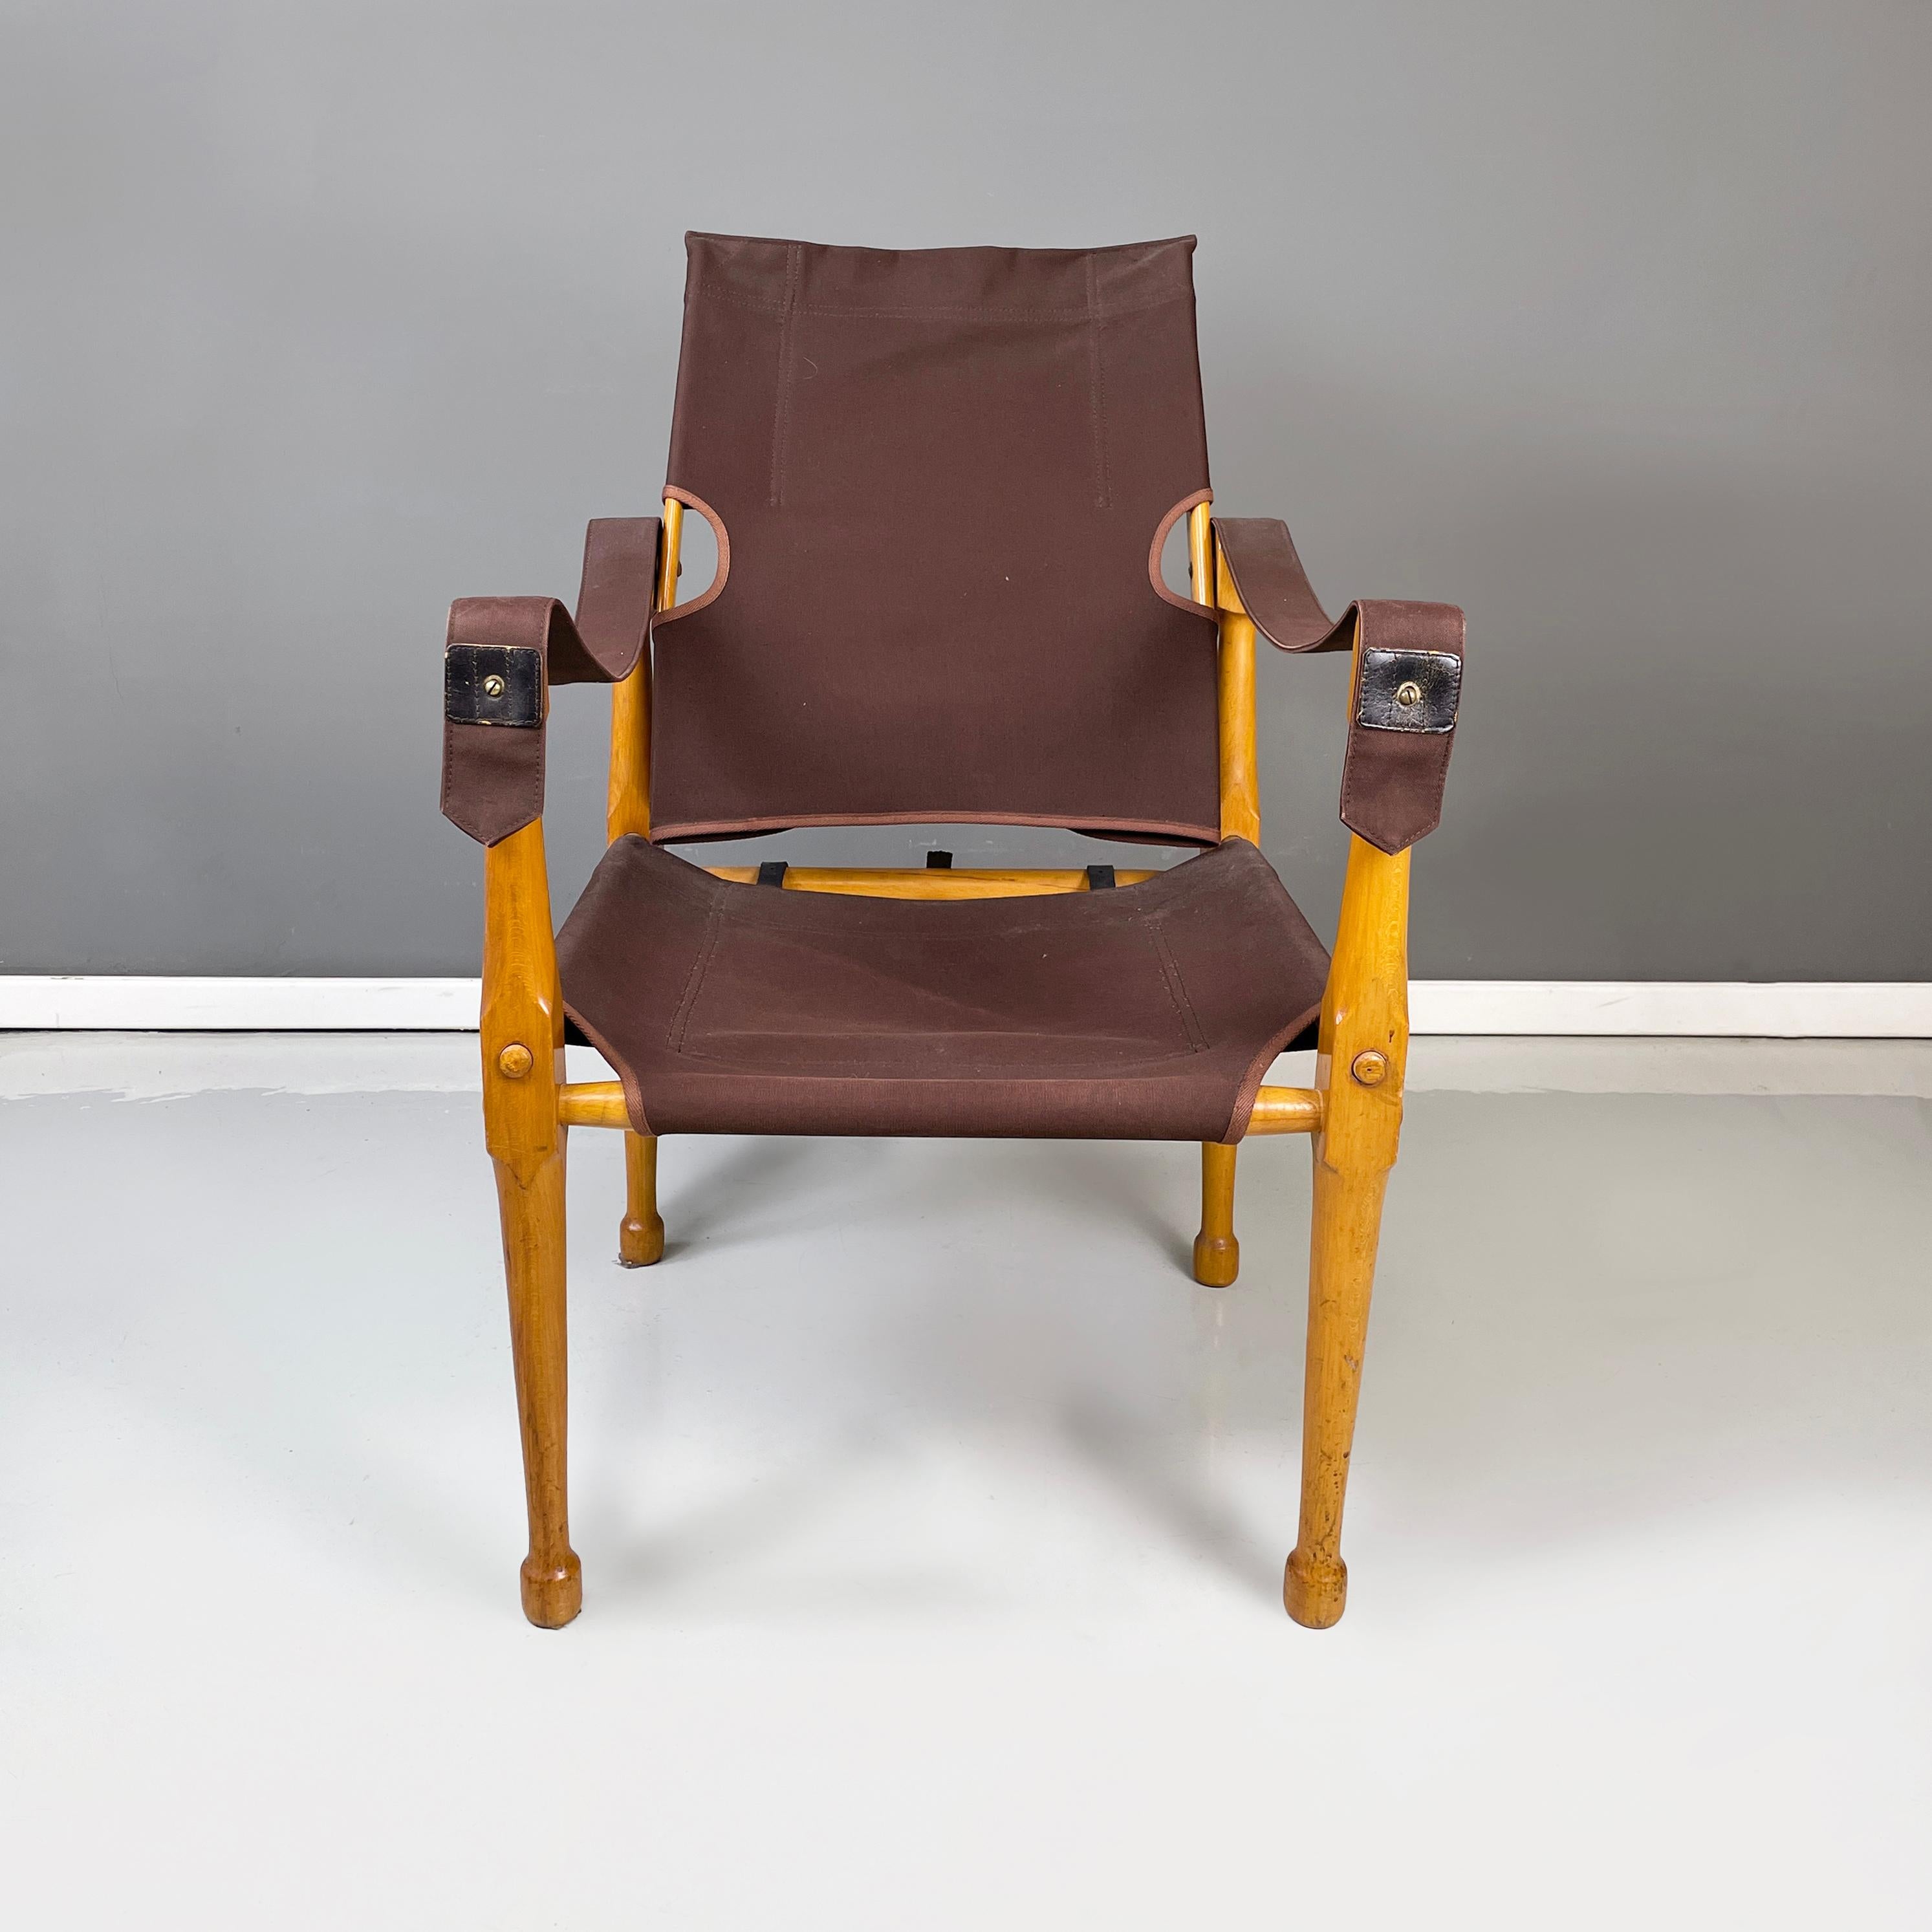 Brauner italienischer Sessel 86 Morettina von Bernard Marstaller für Zanotta, 1980er Jahre
ikonischen und Vintage-Sessel mod. 86 Morettina mit Holzstruktur, durch Verriegelung befestigt. Sitz und Rückenlehne sind aus dunkelbraunem Baumwollstoff